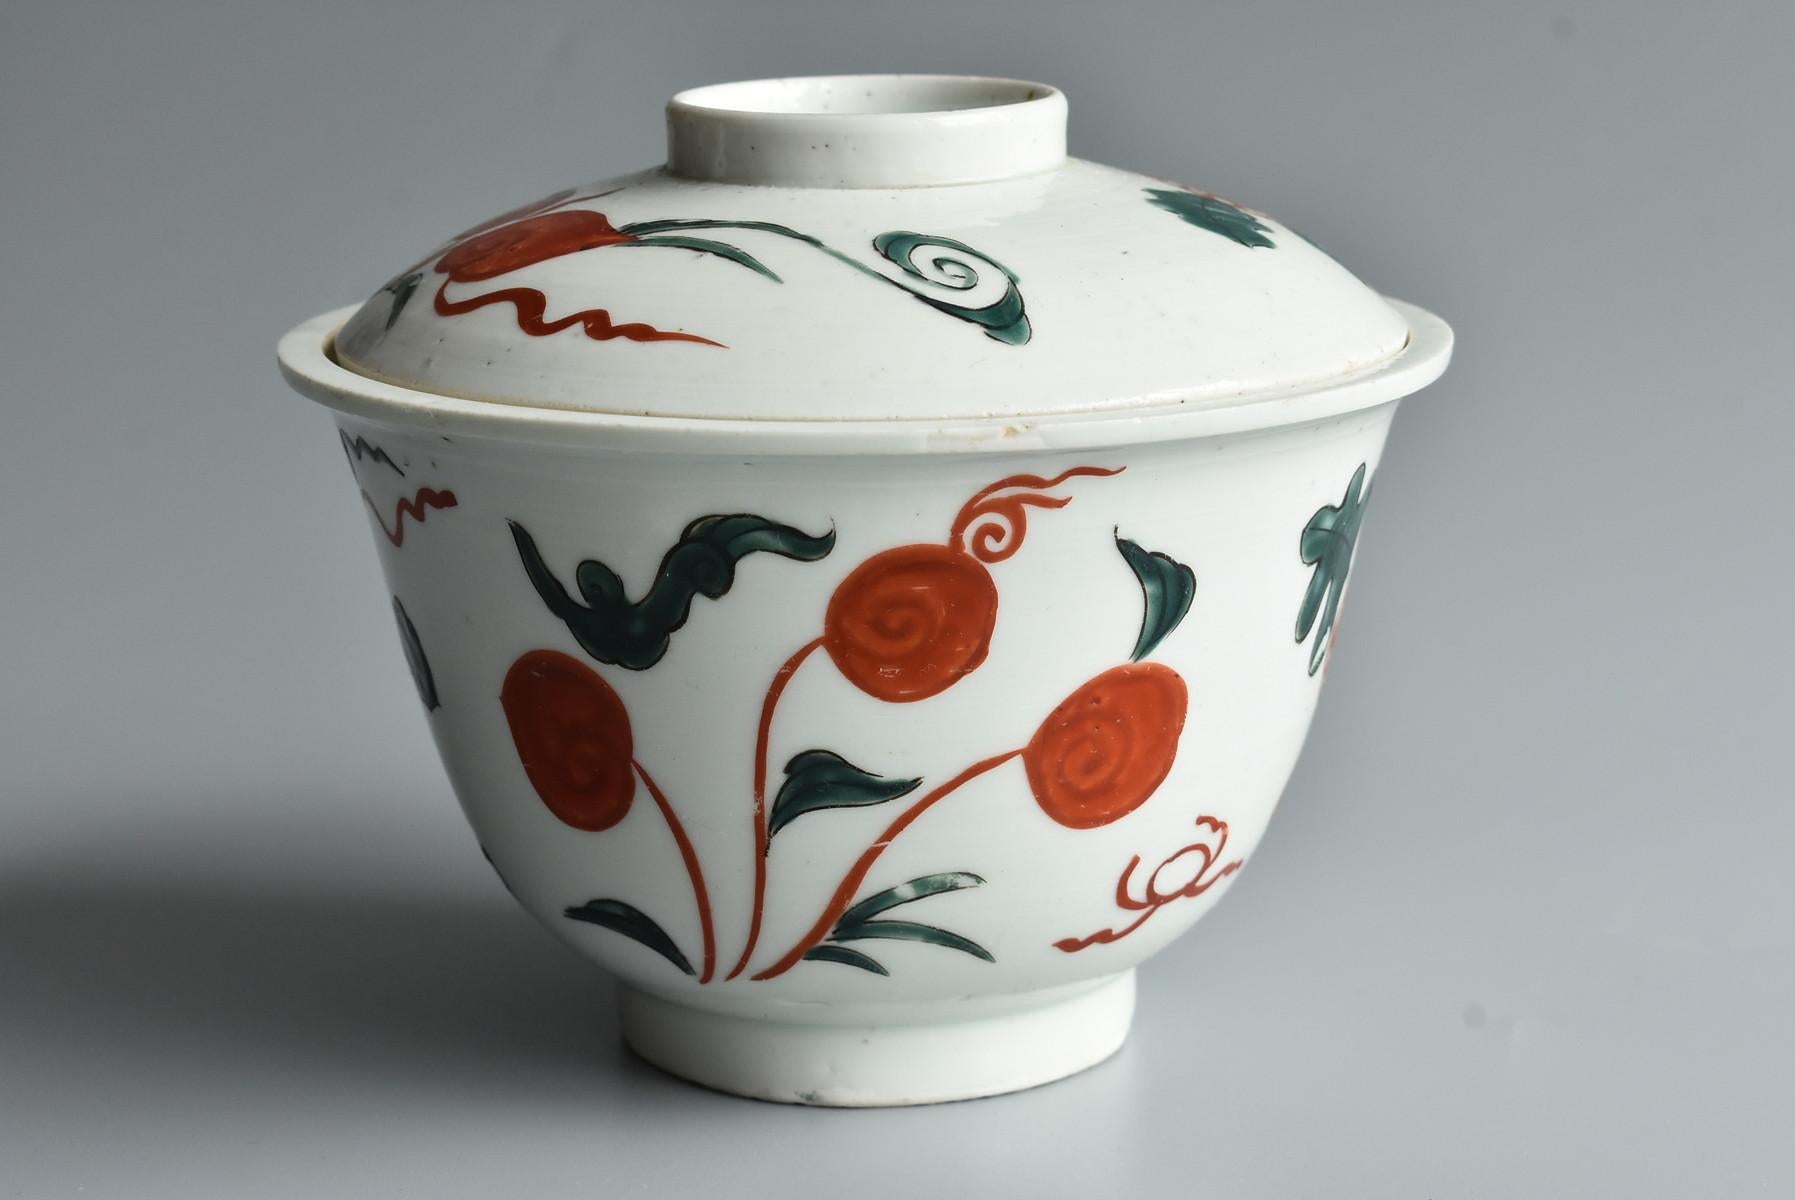 Bol de la dynastie chinoise des Qing (vers le XIXe siècle).
Il s'agit d'une simple peinture rouge et verte.
Je me sens très gentille et mignonne.
De plus, lorsque vous retirez le couvercle, vous pouvez voir les motifs ronds verts et